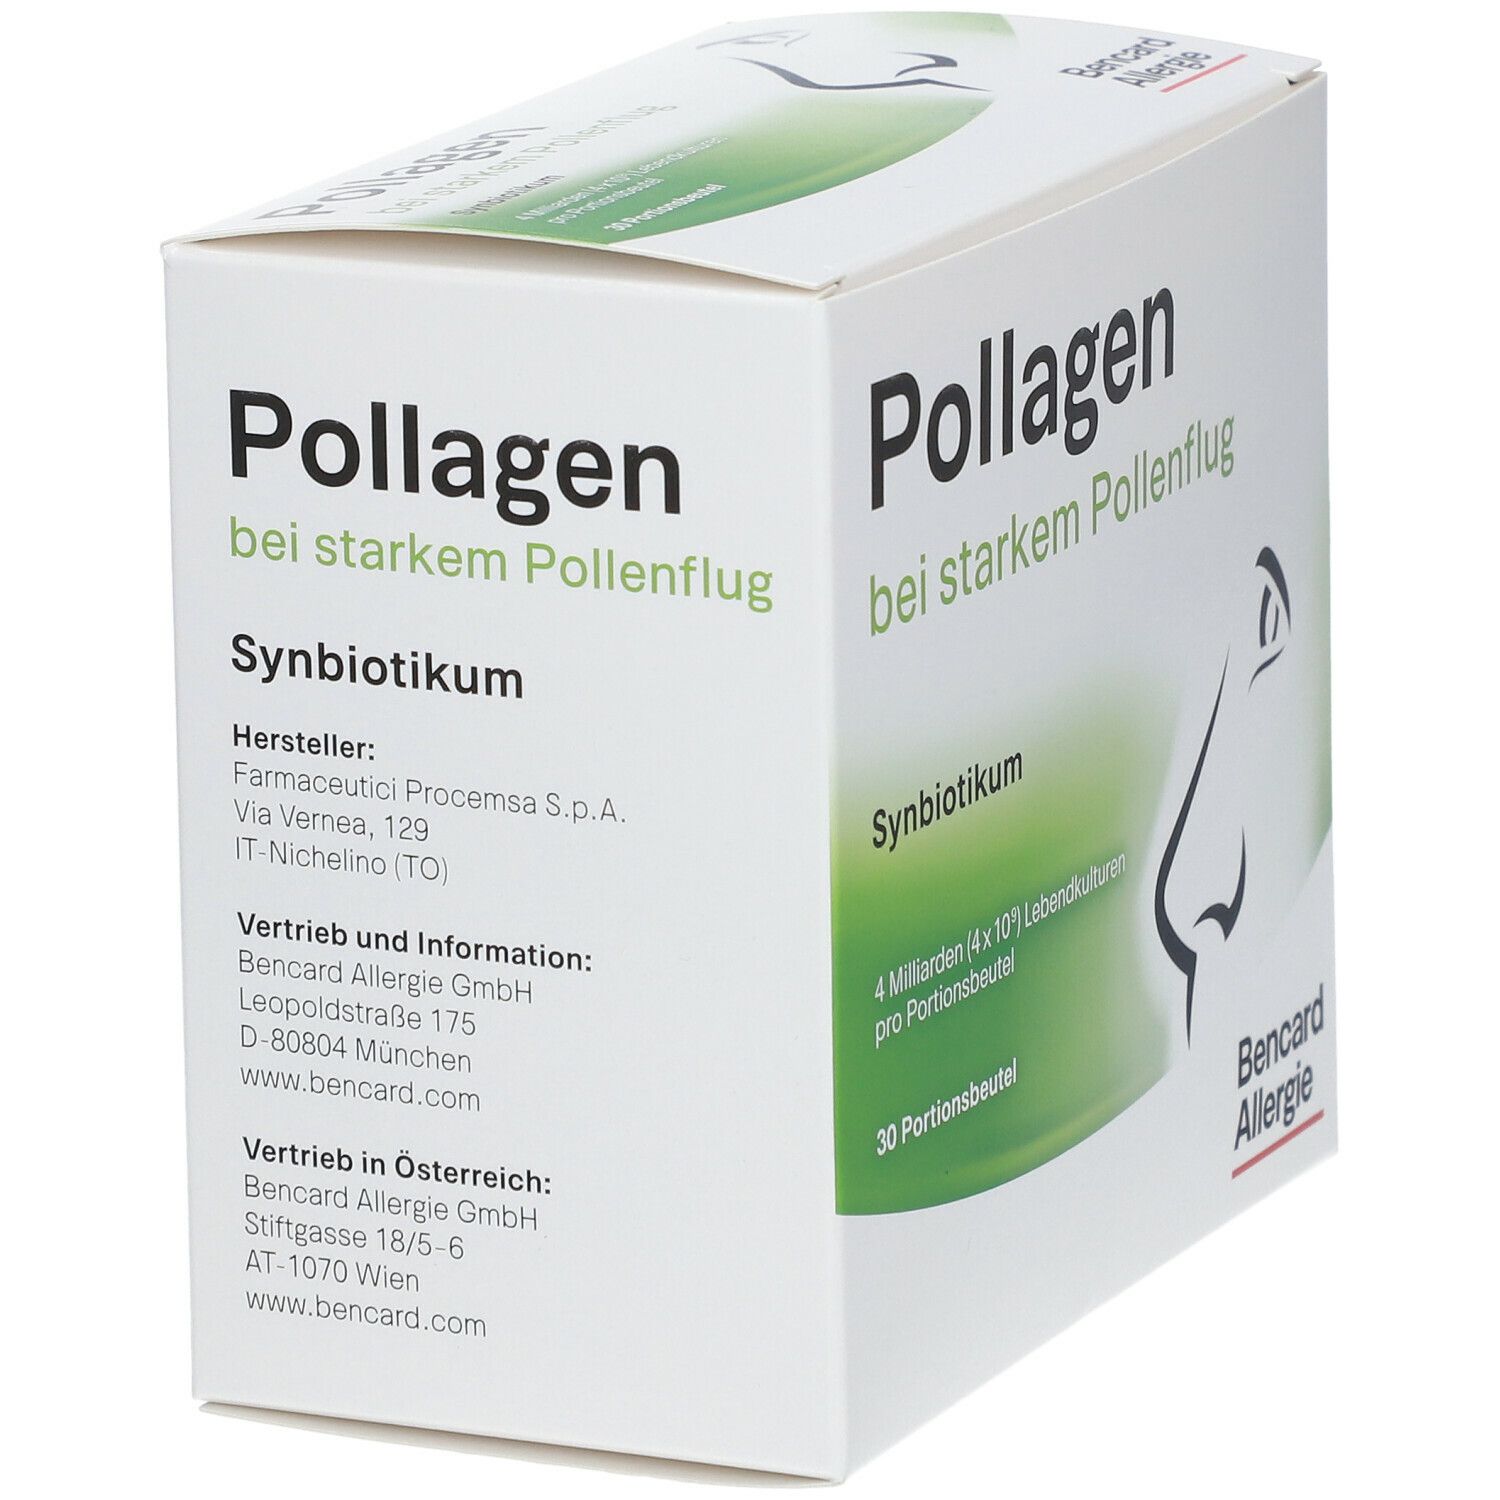 Pollagen